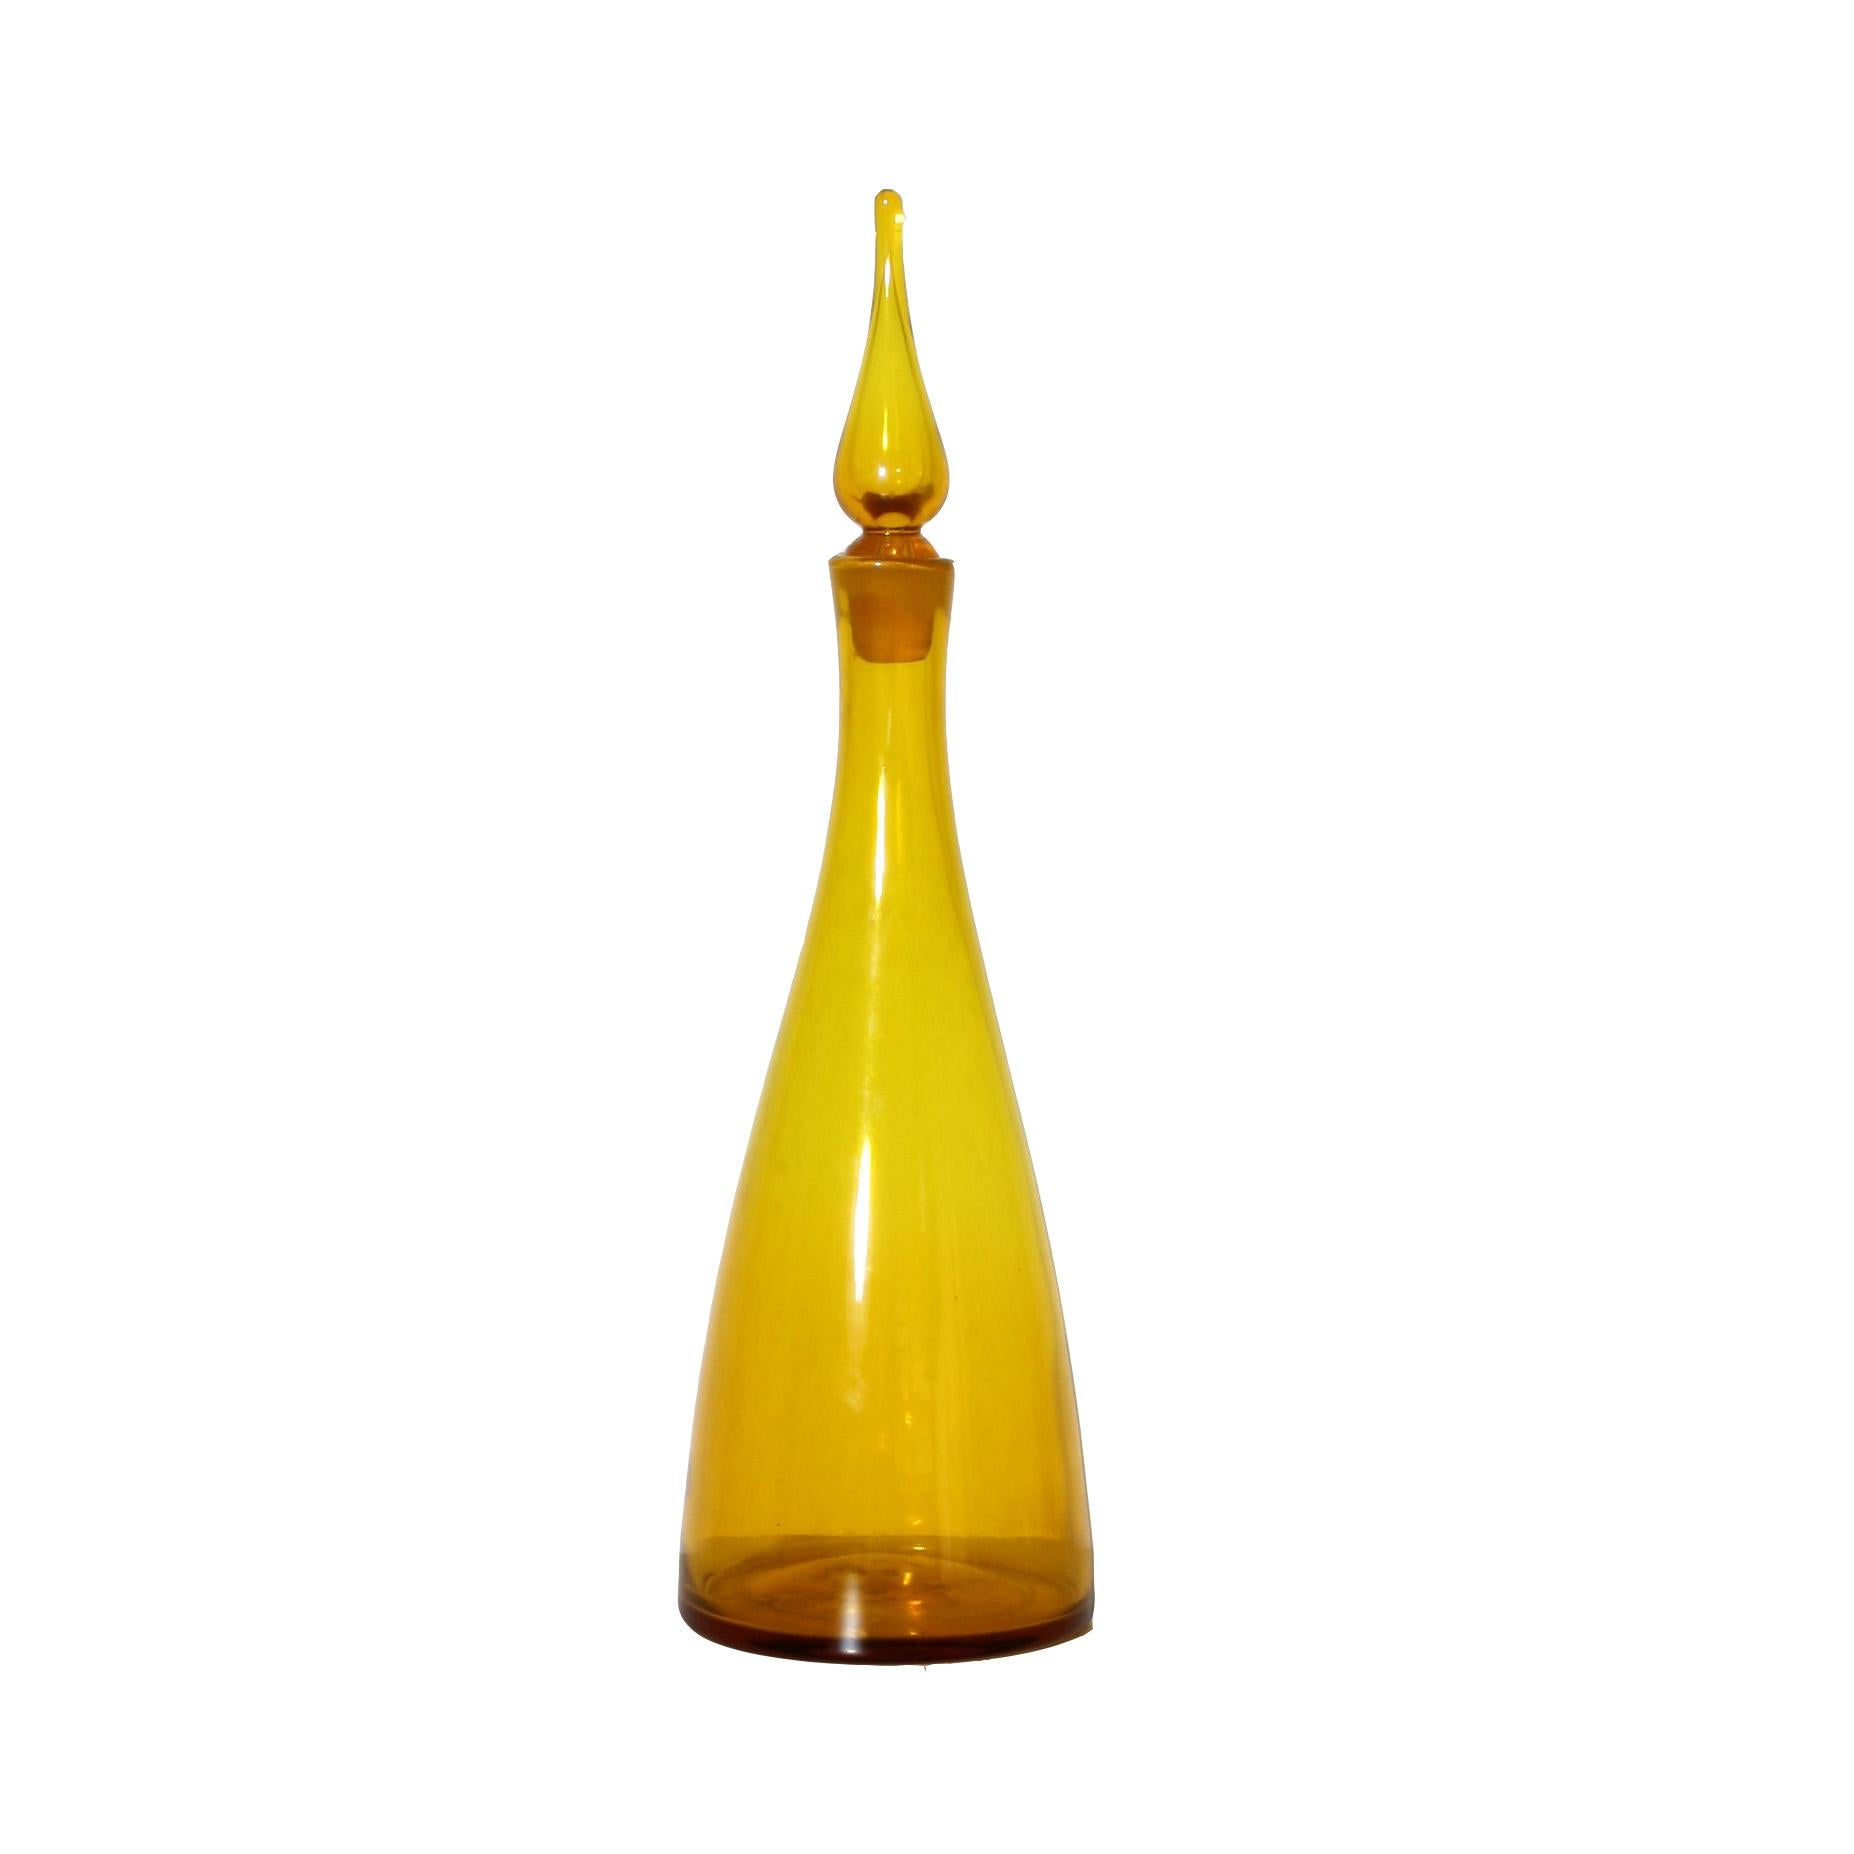 Blenko yellow decanter, circa 1960.